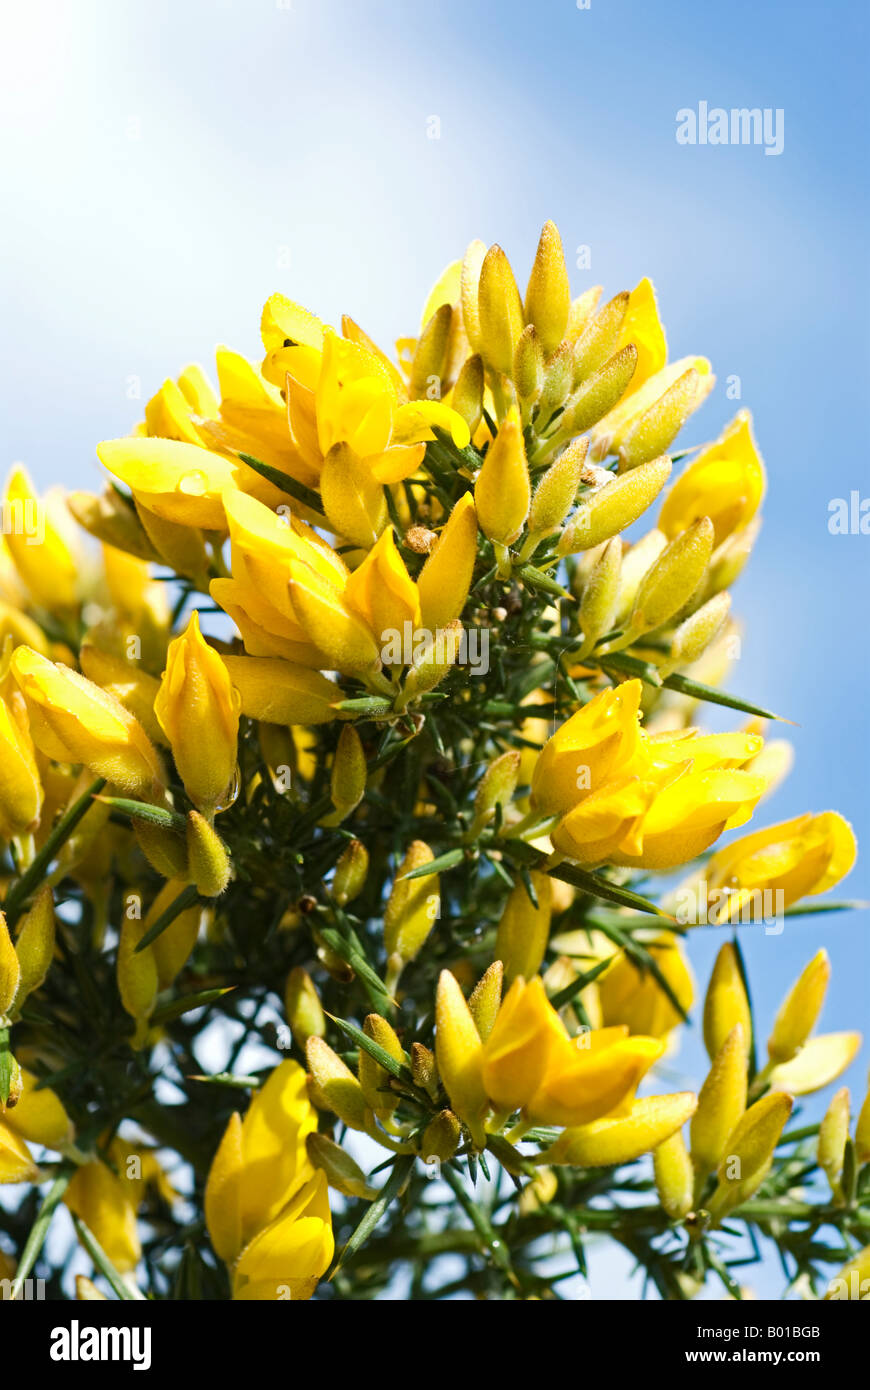 Stock Foto von den gelben Blüten auf einem Gorse-Busch Stockfoto